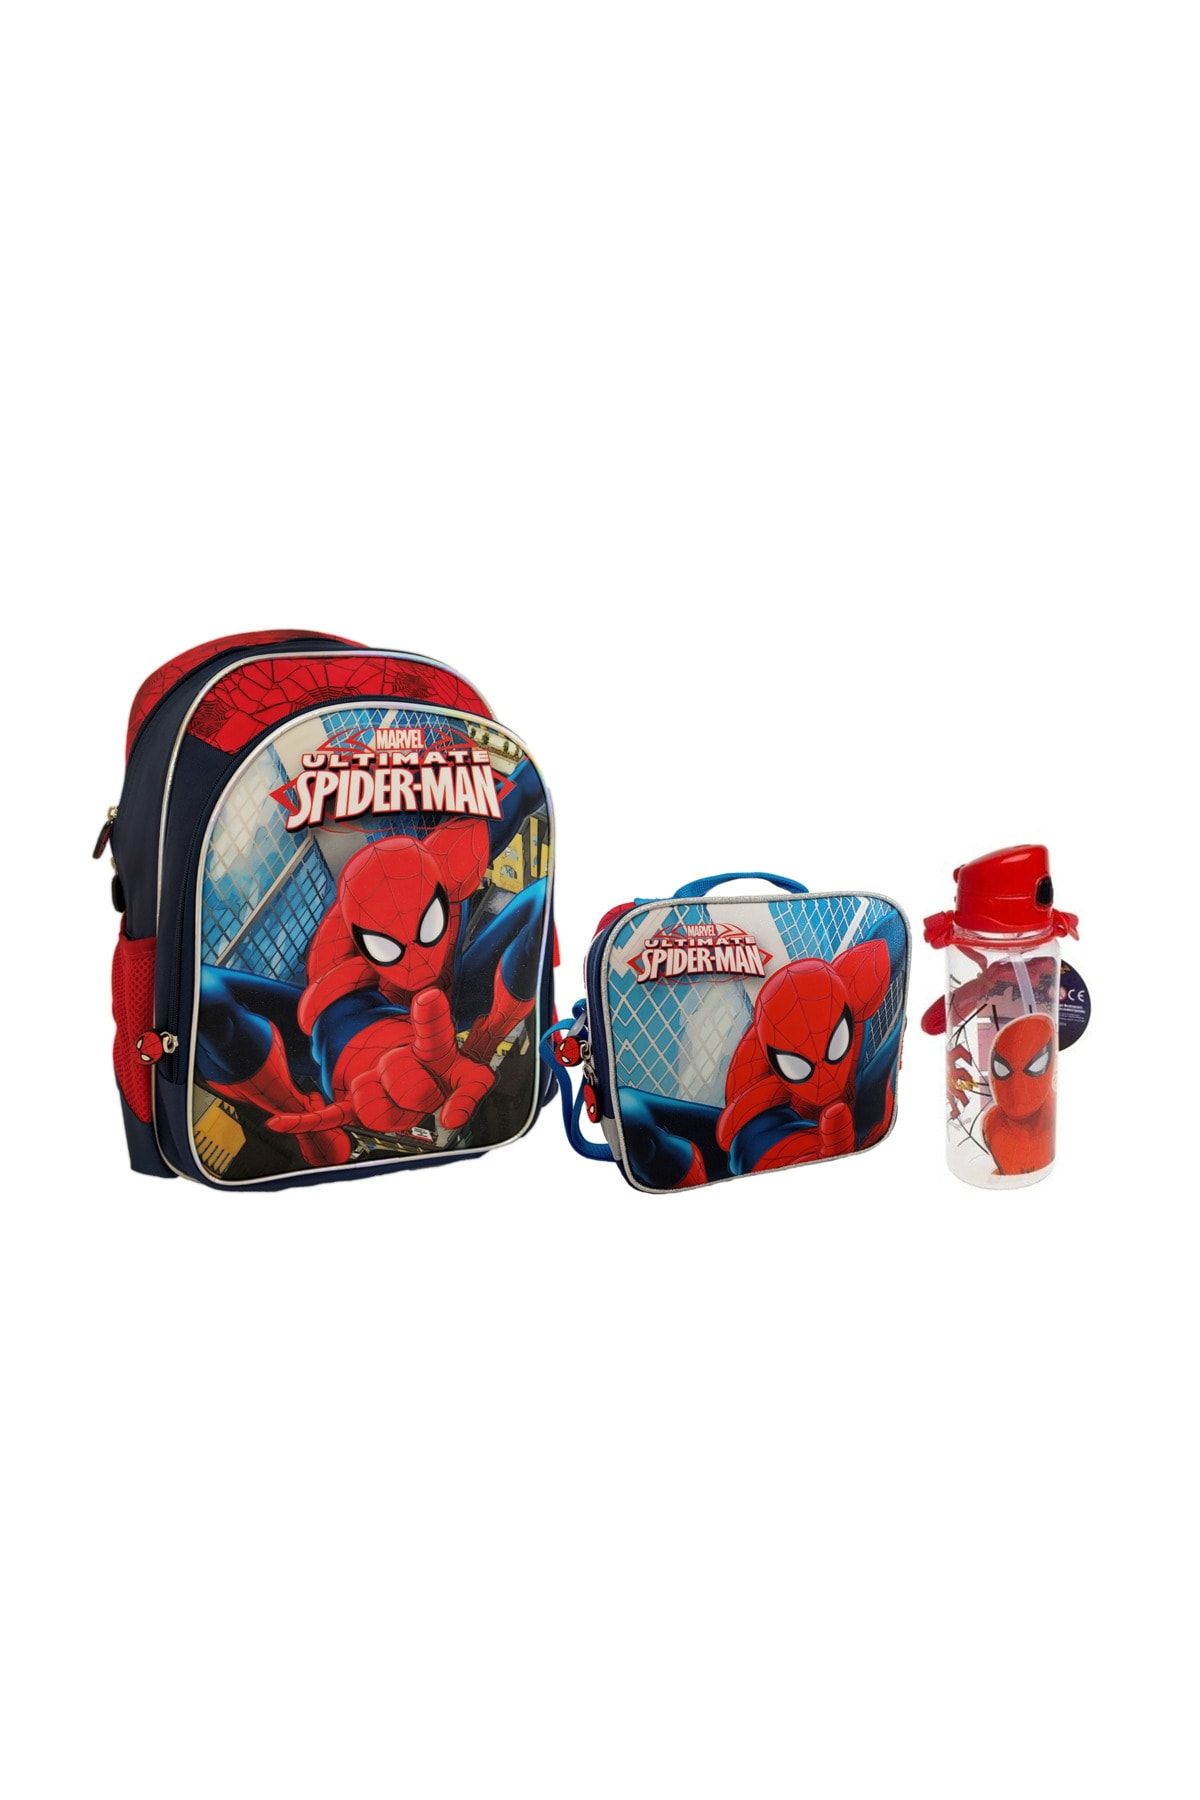 Hakan Çanta Spiderman Okul Sırt Çantası Beslenme Çantası Matara 3'lü Set